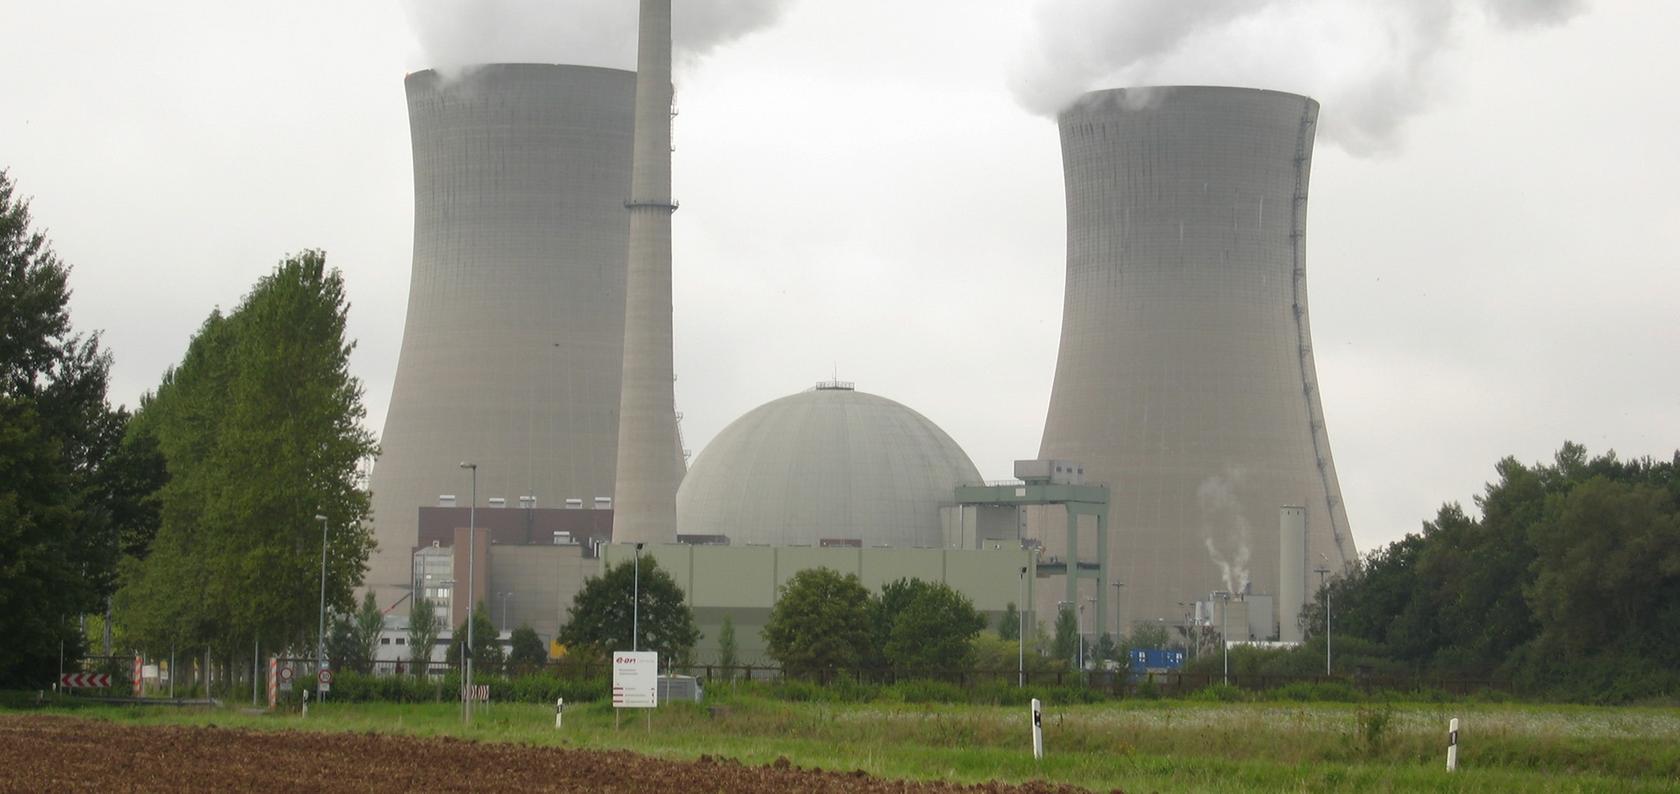 Ein 26-Jähriger brach am Freitagabend in das Gelände des AKW Grafenrheinfeld ein. Dort forderte er unter anderem, das Kernkraftwerk unverzüglich abzuschalten.